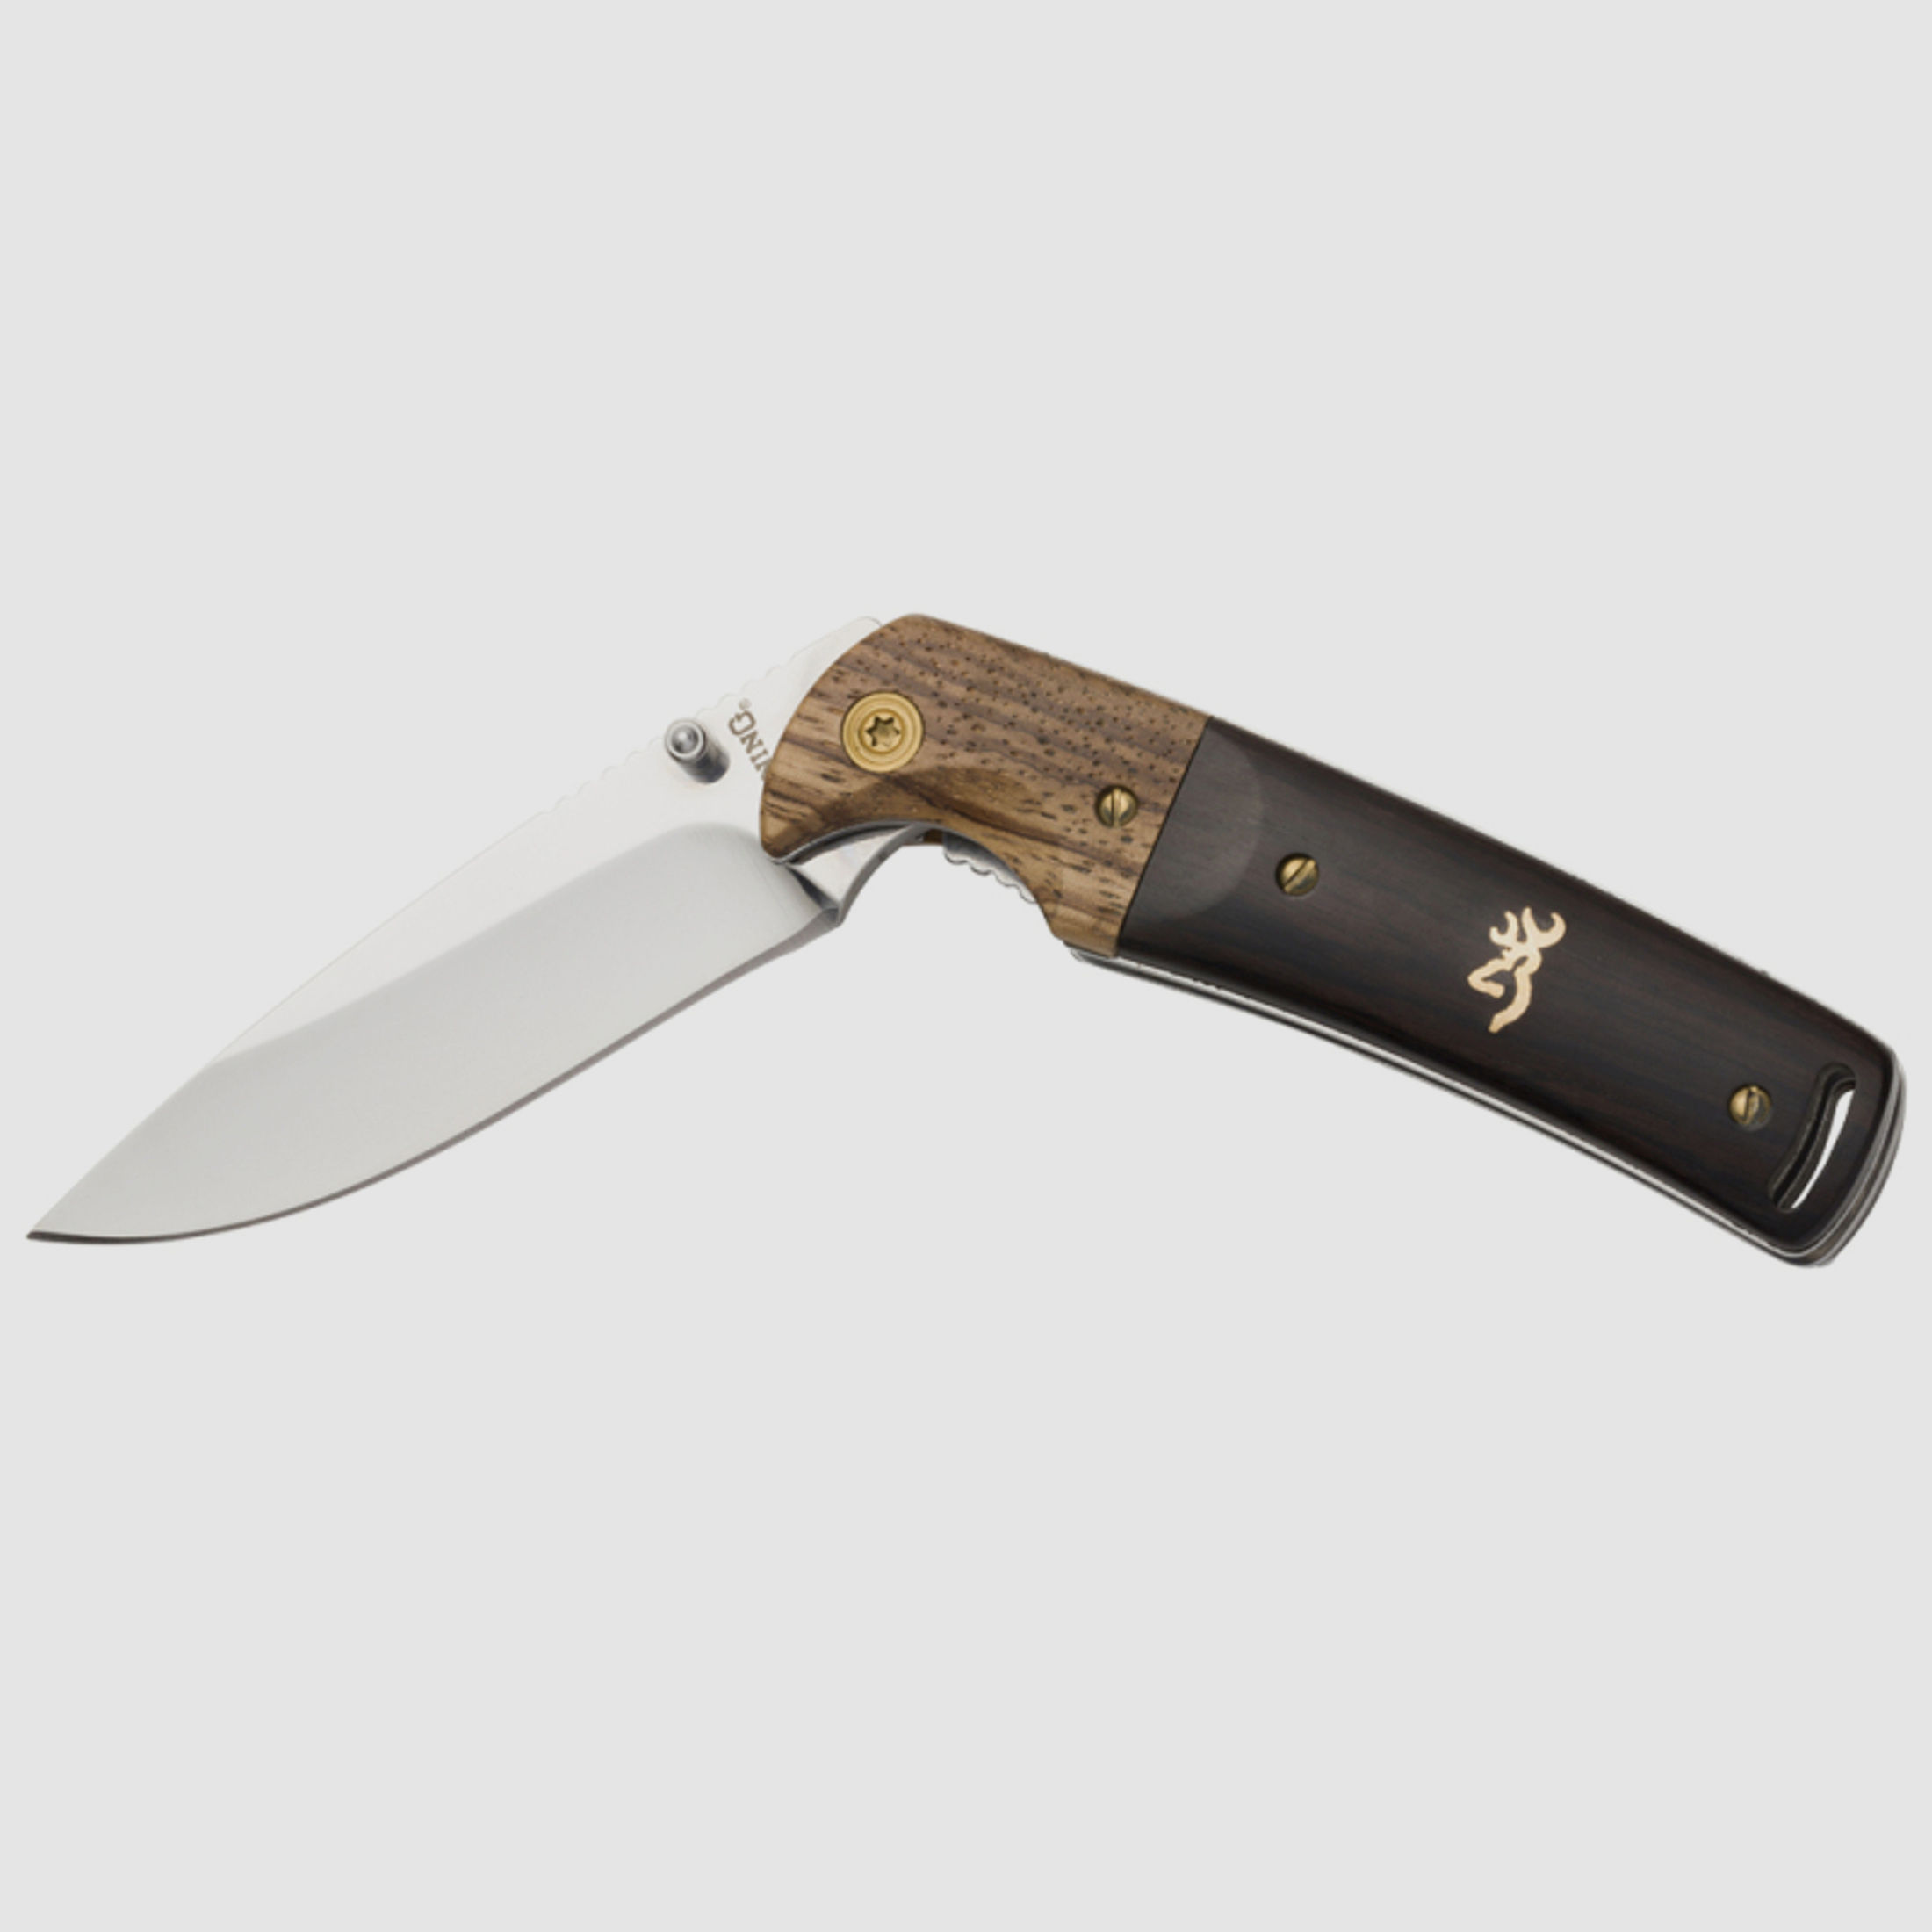 1x Browning Messer Buckmark Hunter | Klappmesser mit Nylonetui | 7.6cm Klinge aus AUS-8 Stahl | Holz